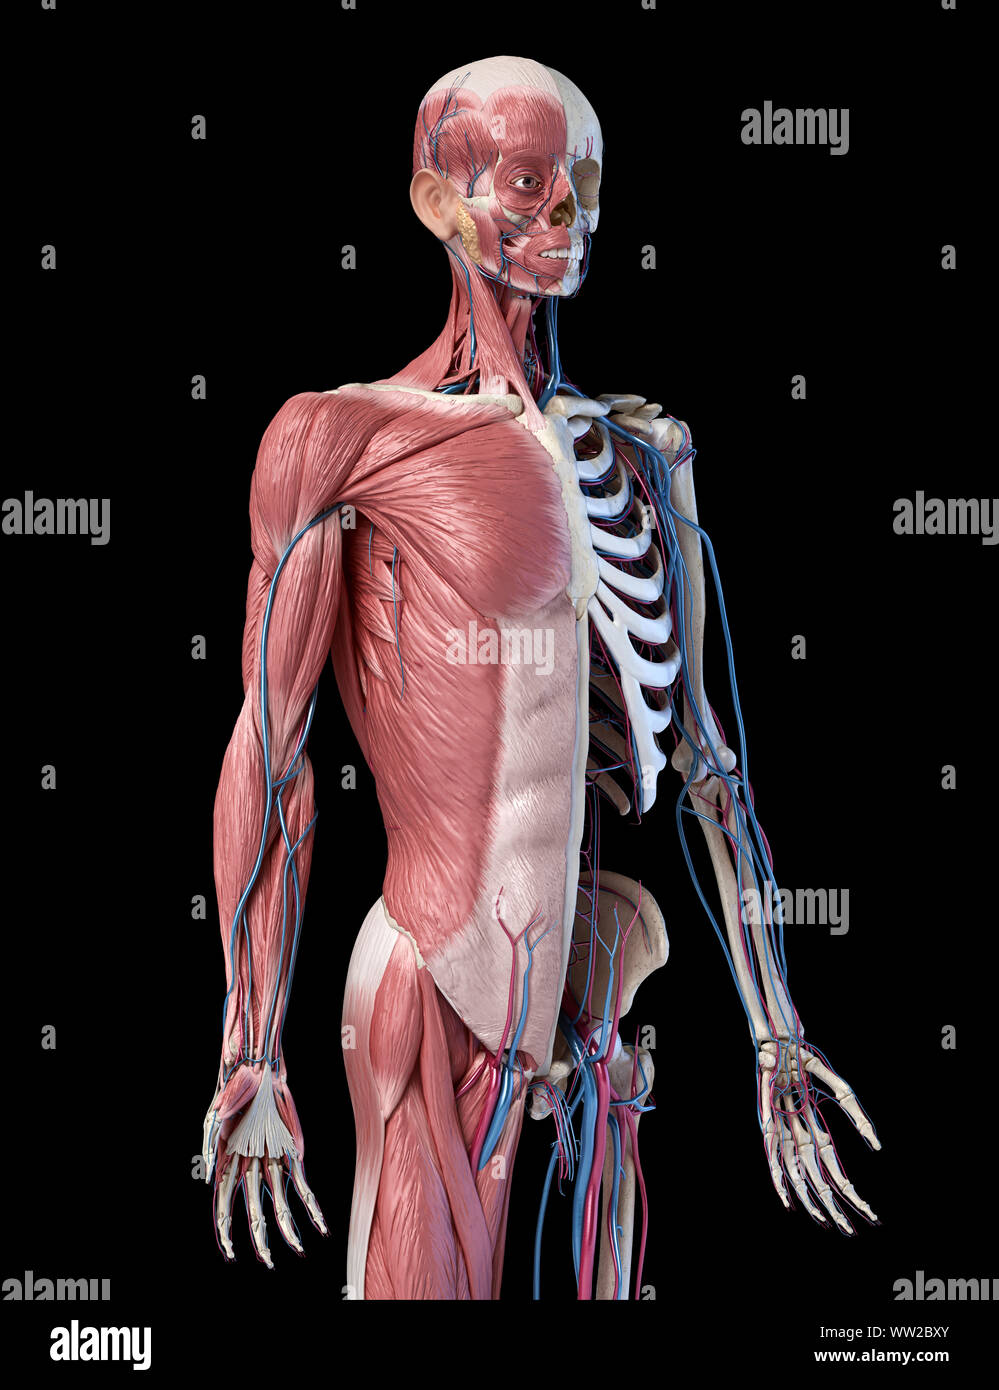 Die menschliche Anatomie 3/4 Körper Skelett, Muskulatur und Herz-Kreislauf-System. Perspektivische Ansicht von vorne, auf schwarzem Hintergrund. 3D-Darstellung Stockfoto